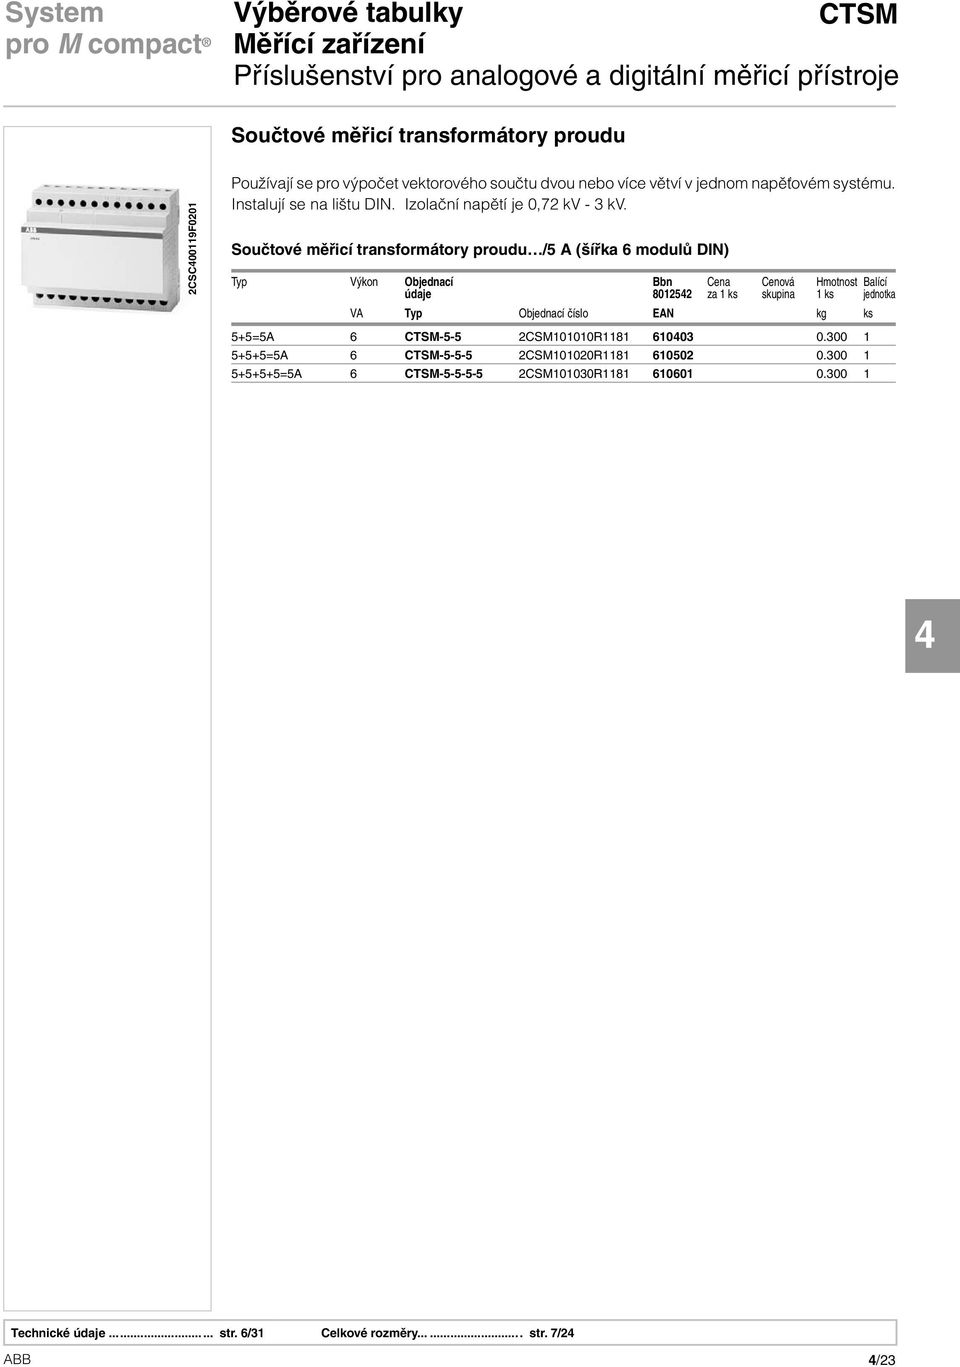 Součtové měřicí transformátory proudu /5 A (šířka 6 modulů DIN) Typ Výkon Objednací Bbn Cena Cenová Hmotnost Balící údaje 801252 za 1 ks skupina 1 ks jednotka VA Typ